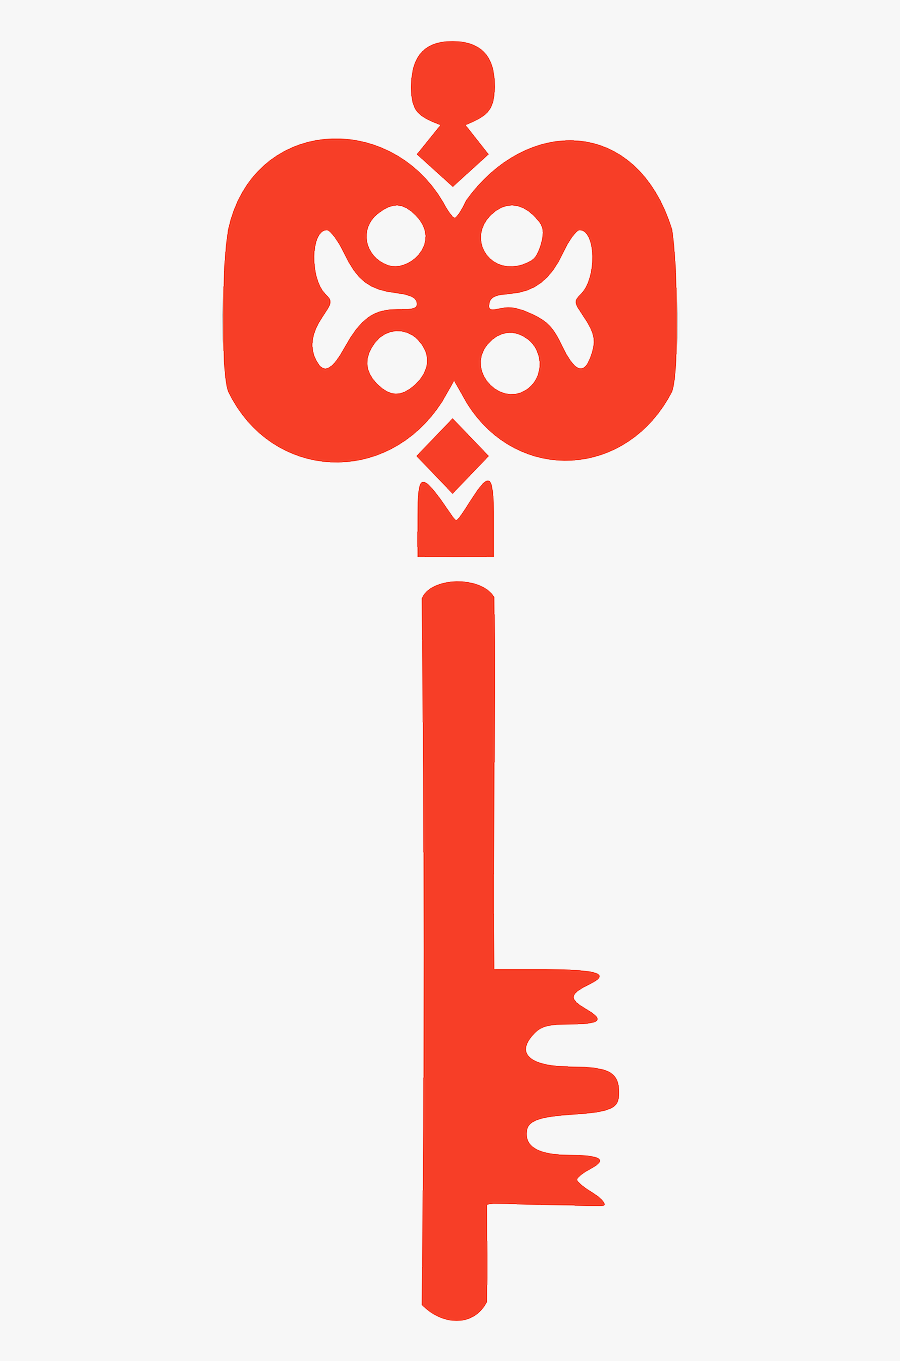 Teal Key Clip Art, Transparent Clipart